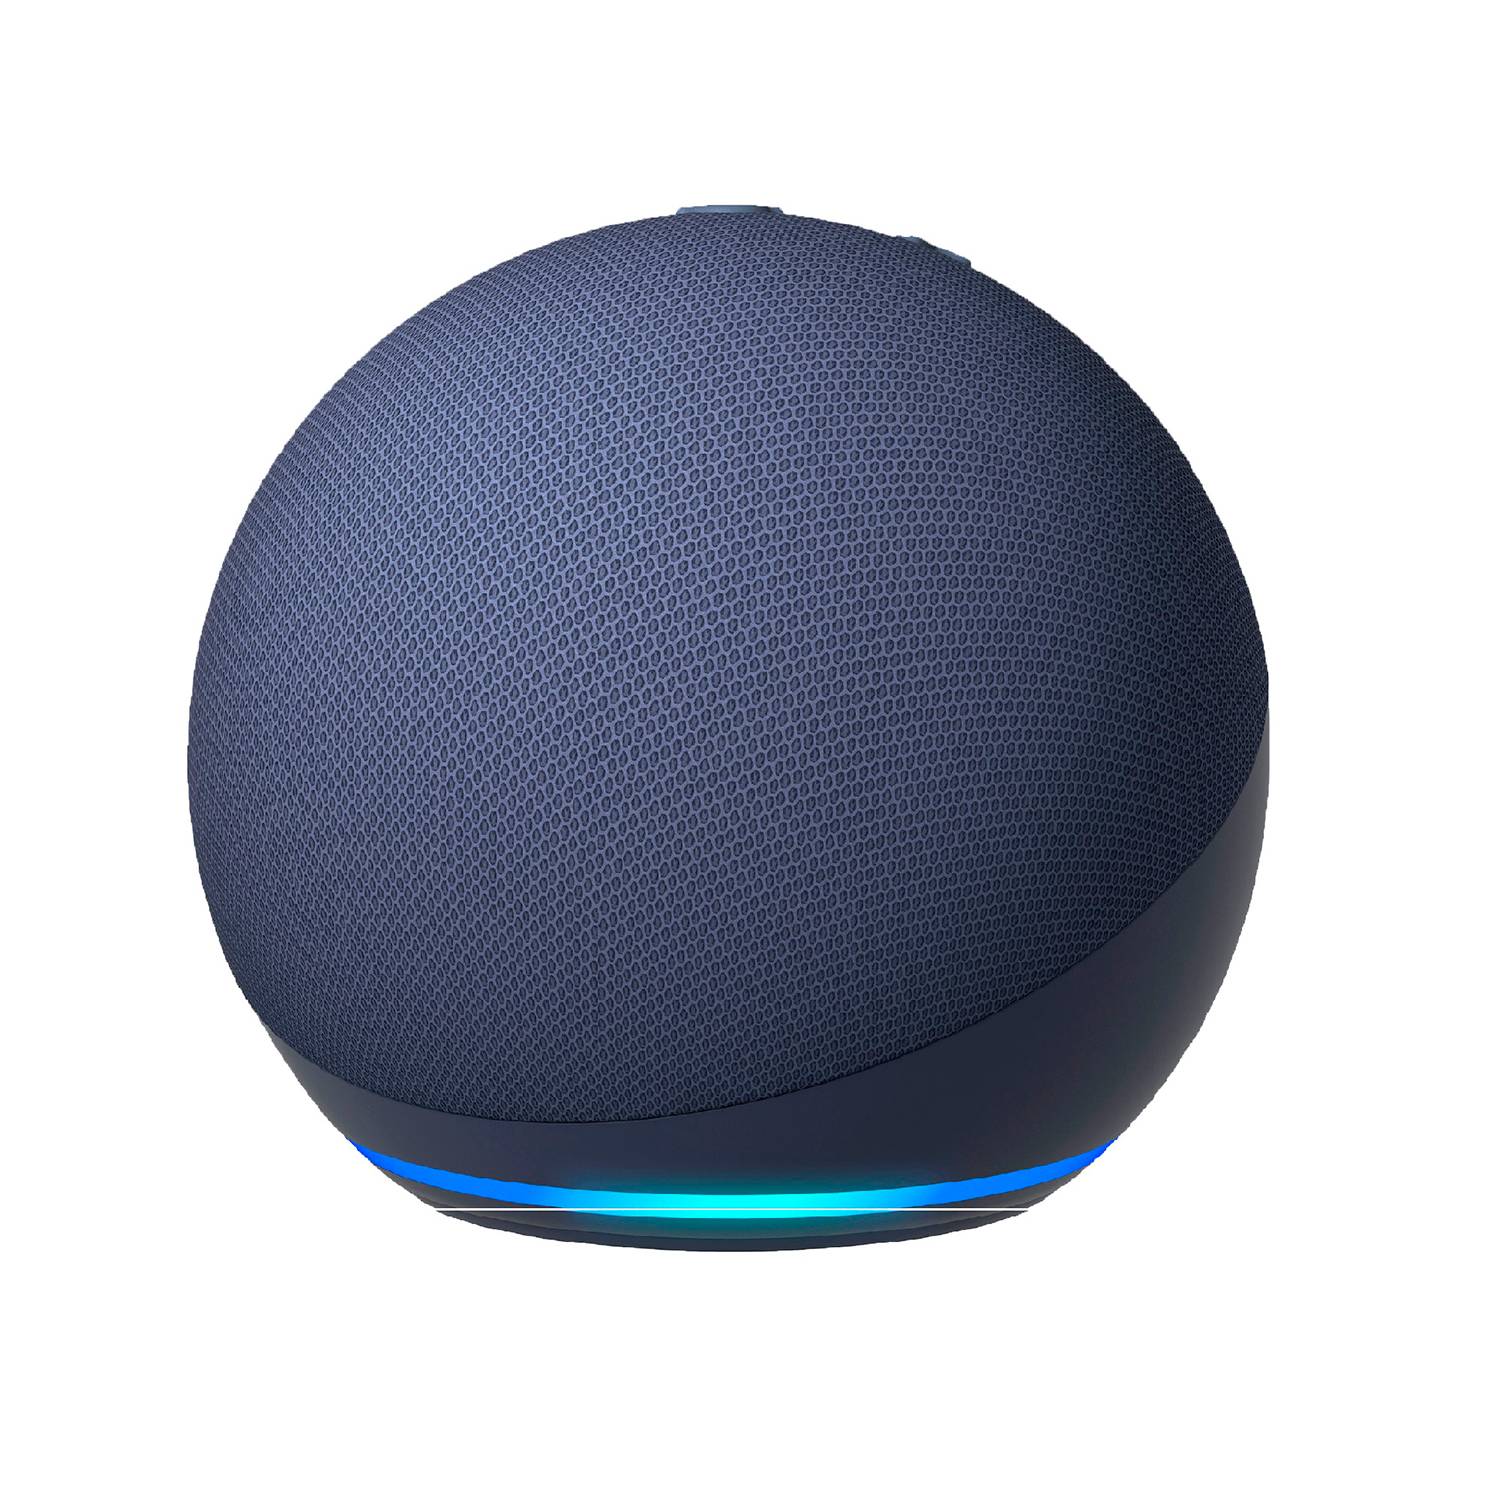 Altavoz Inteligente  Echo Dot 5ta Generación - blanco- (Alexa)